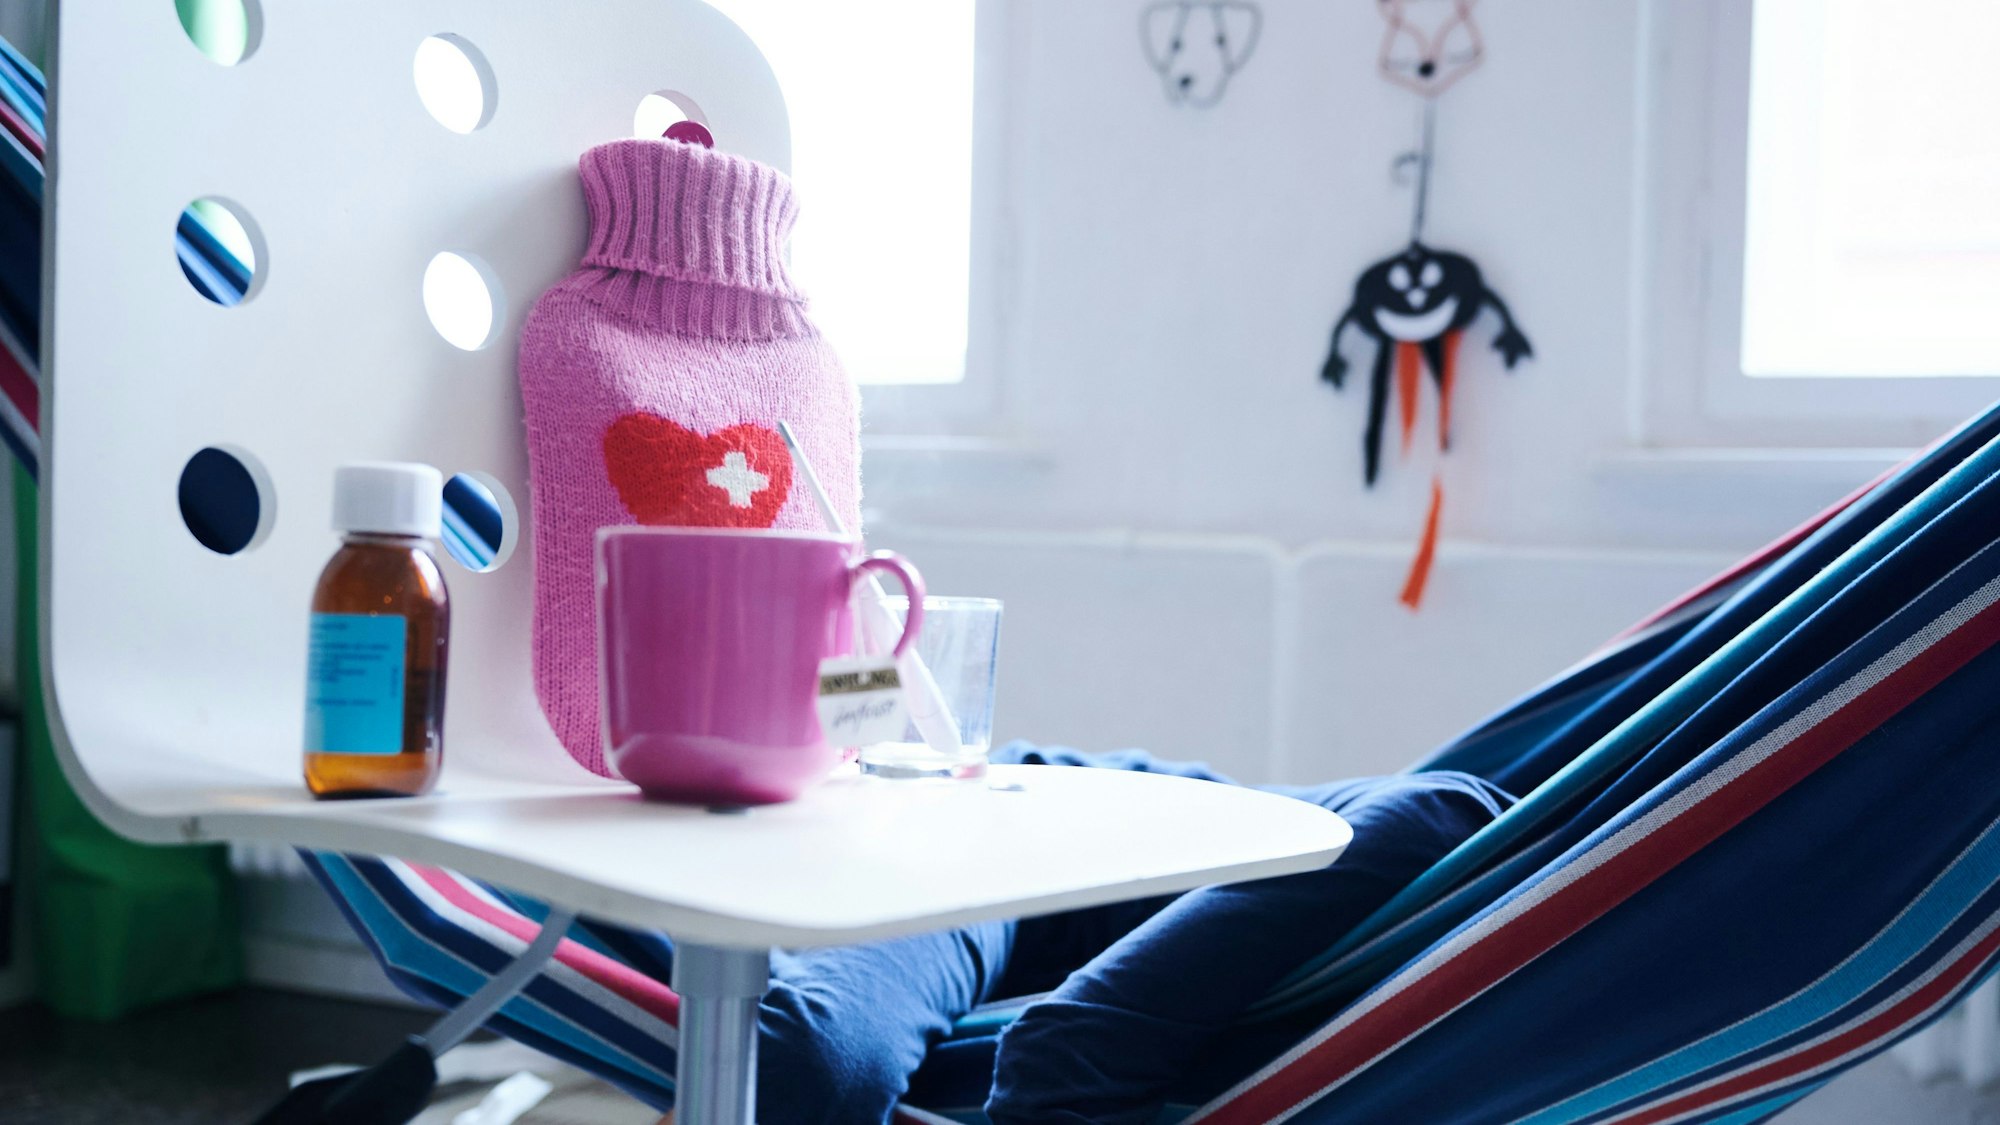 Fieberthermometer, Hustensaft, Wärmflasche und eine Tasse Tee stehen auf einem Stuhl, während ein Kind im Hintergrund in einer Hängematte liegt (Gestellte Szene).